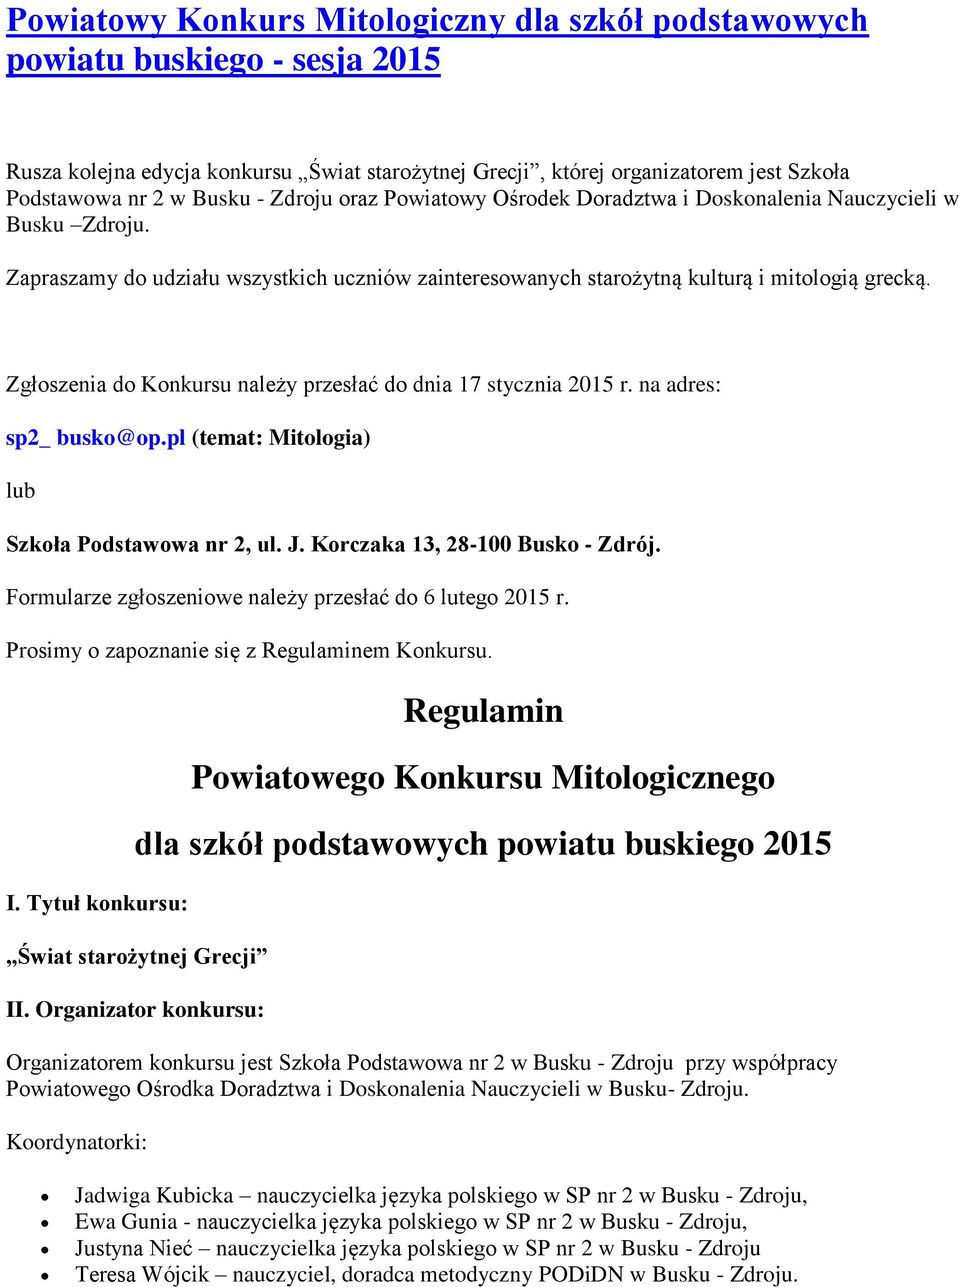 Zgłoszenia do Konkursu należy przesłać do dnia 17 stycznia 2015 r. na adres: sp2_ busko@op.pl (temat: Mitologia) lub Szkoła Podstawowa nr 2, ul. J. Korczaka 13, 28-100 Busko - Zdrój.